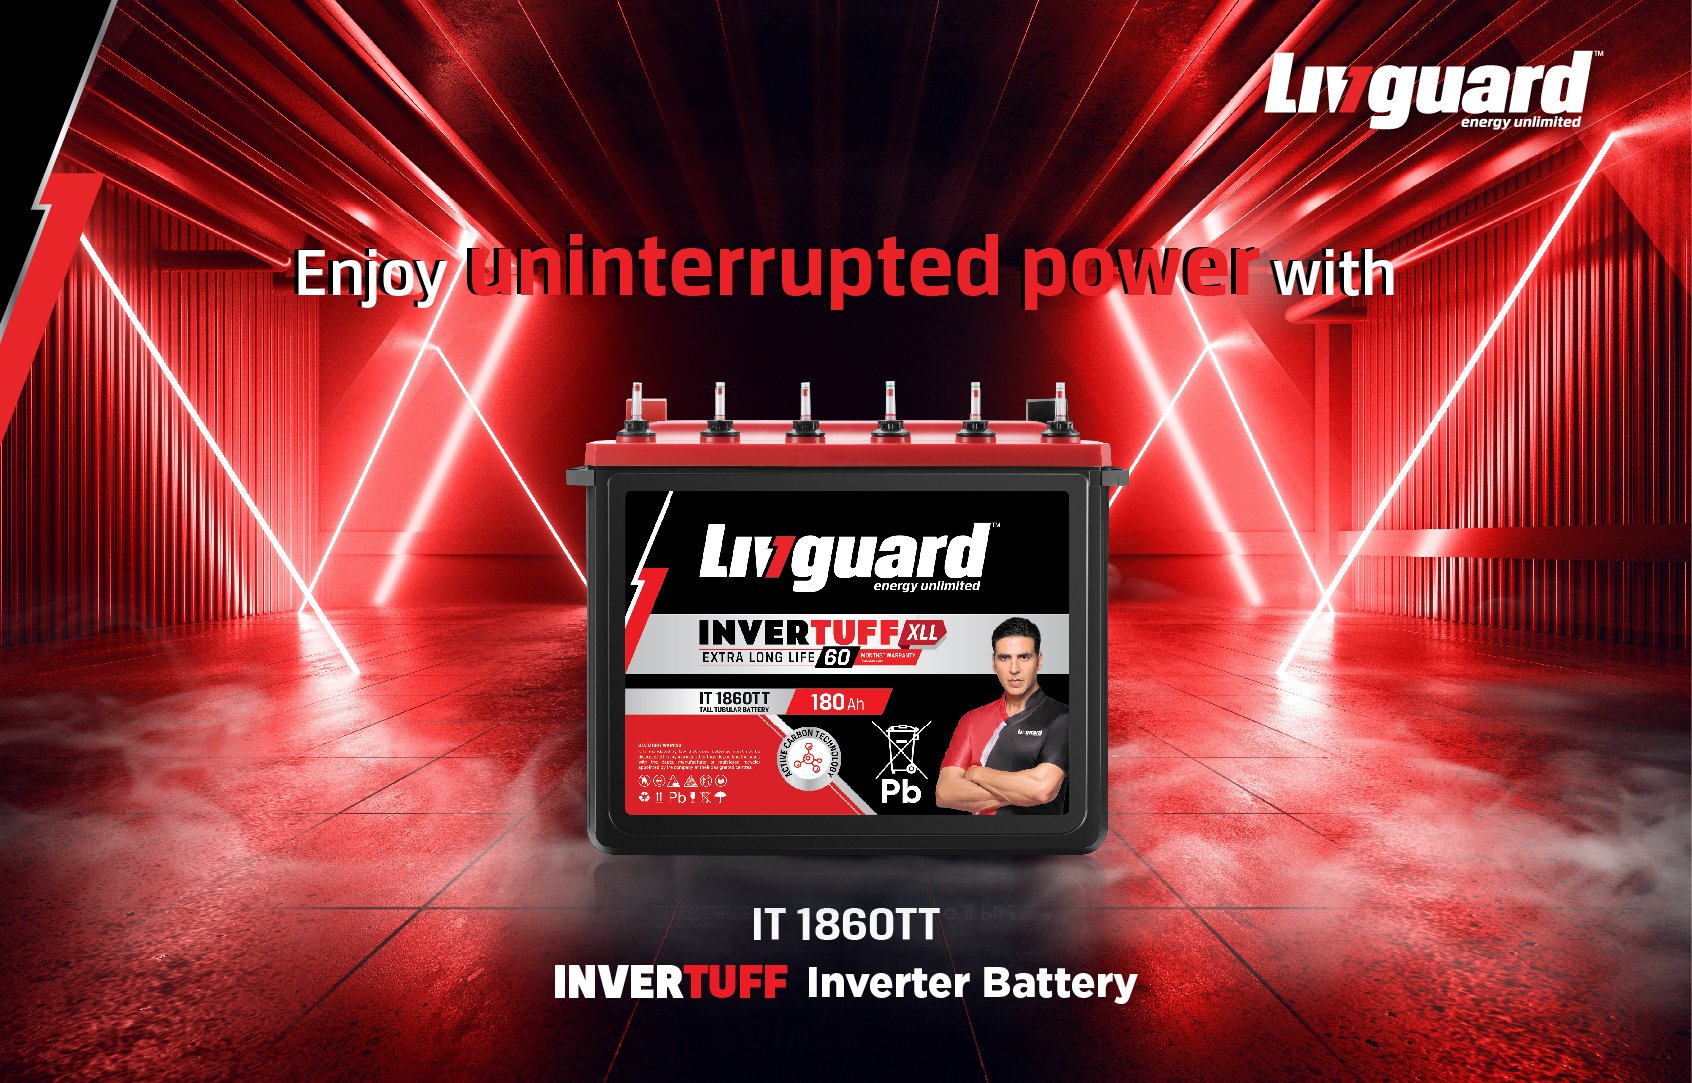 Livguard solar ☀️ Panel,... - Ram Ji Electronics Corp. | Facebook